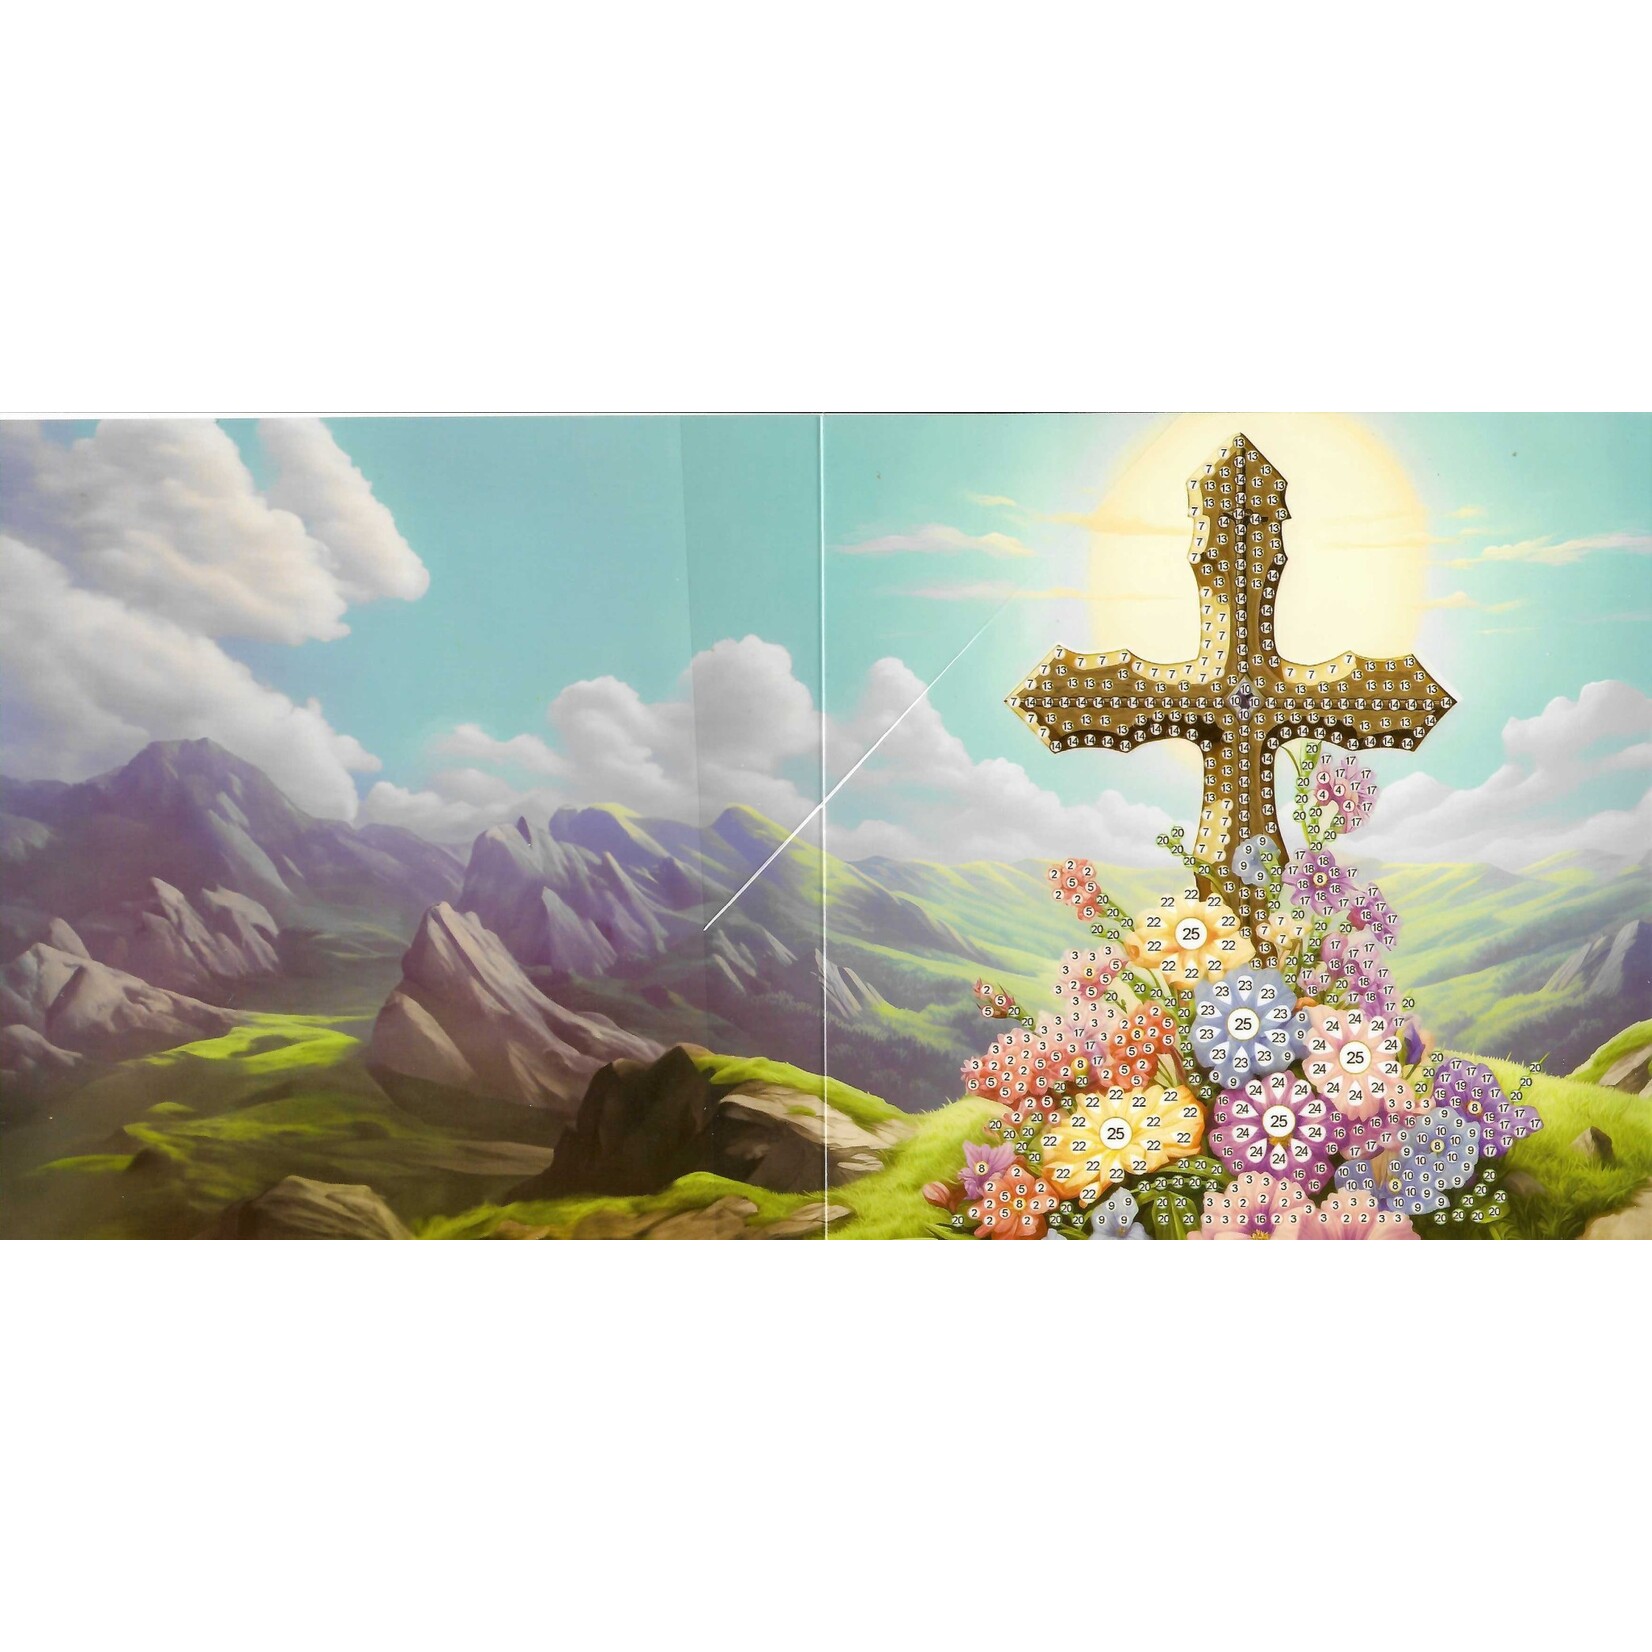 Wenskaart – Kruis 5 op een berg met bloemen